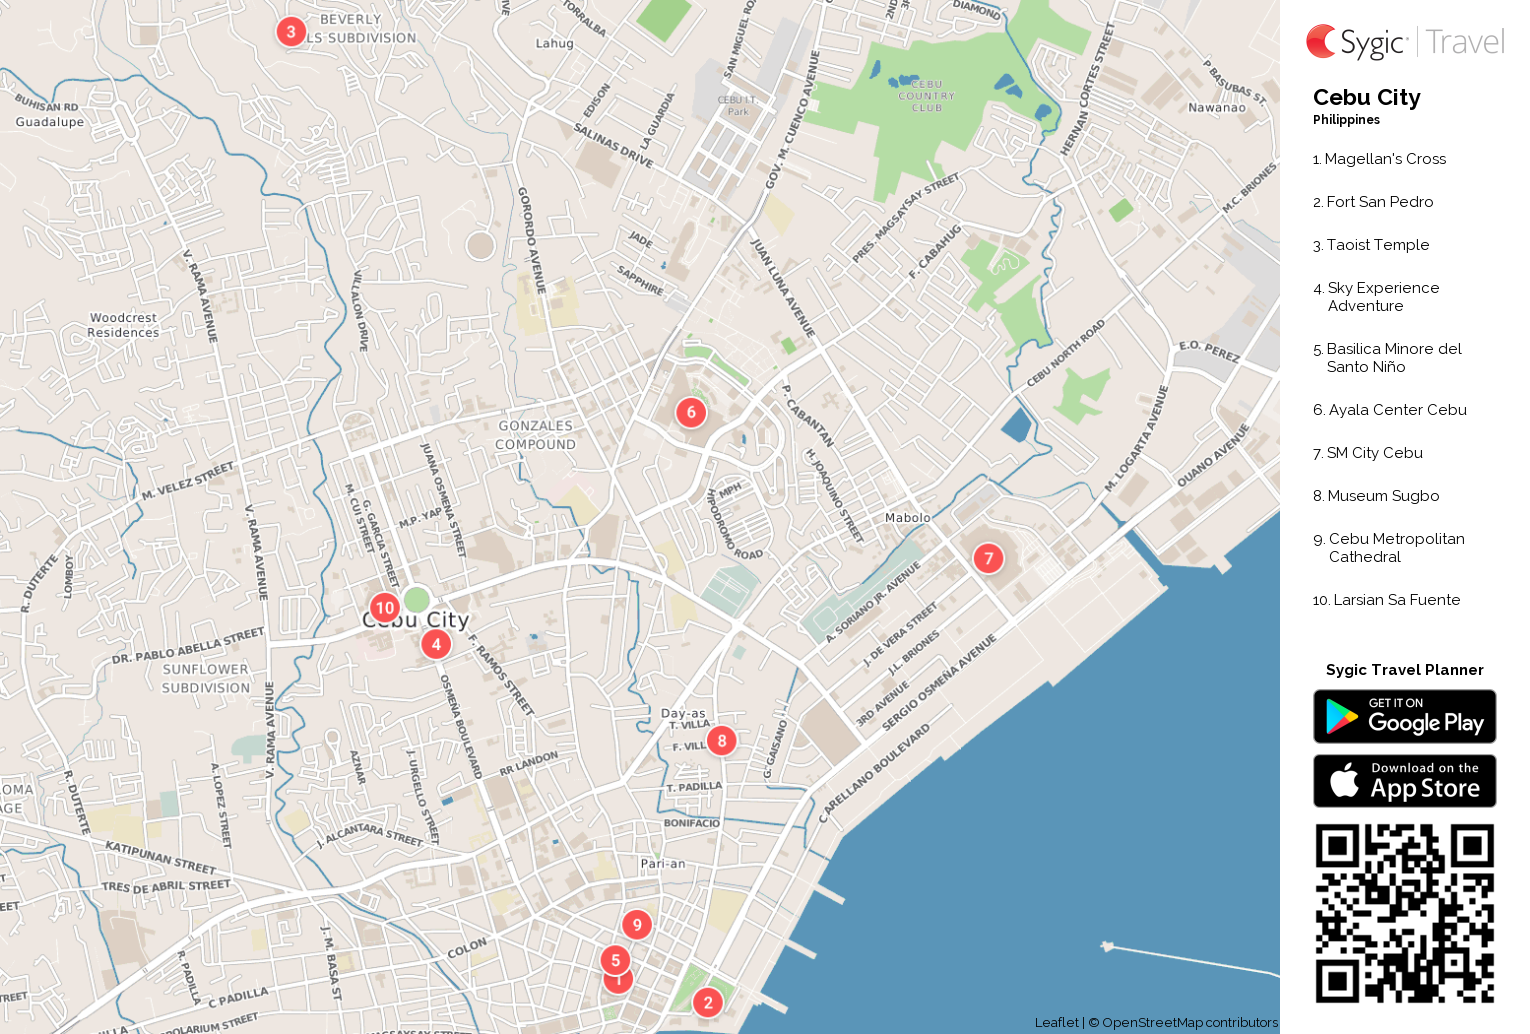 map of tourist spot in cebu